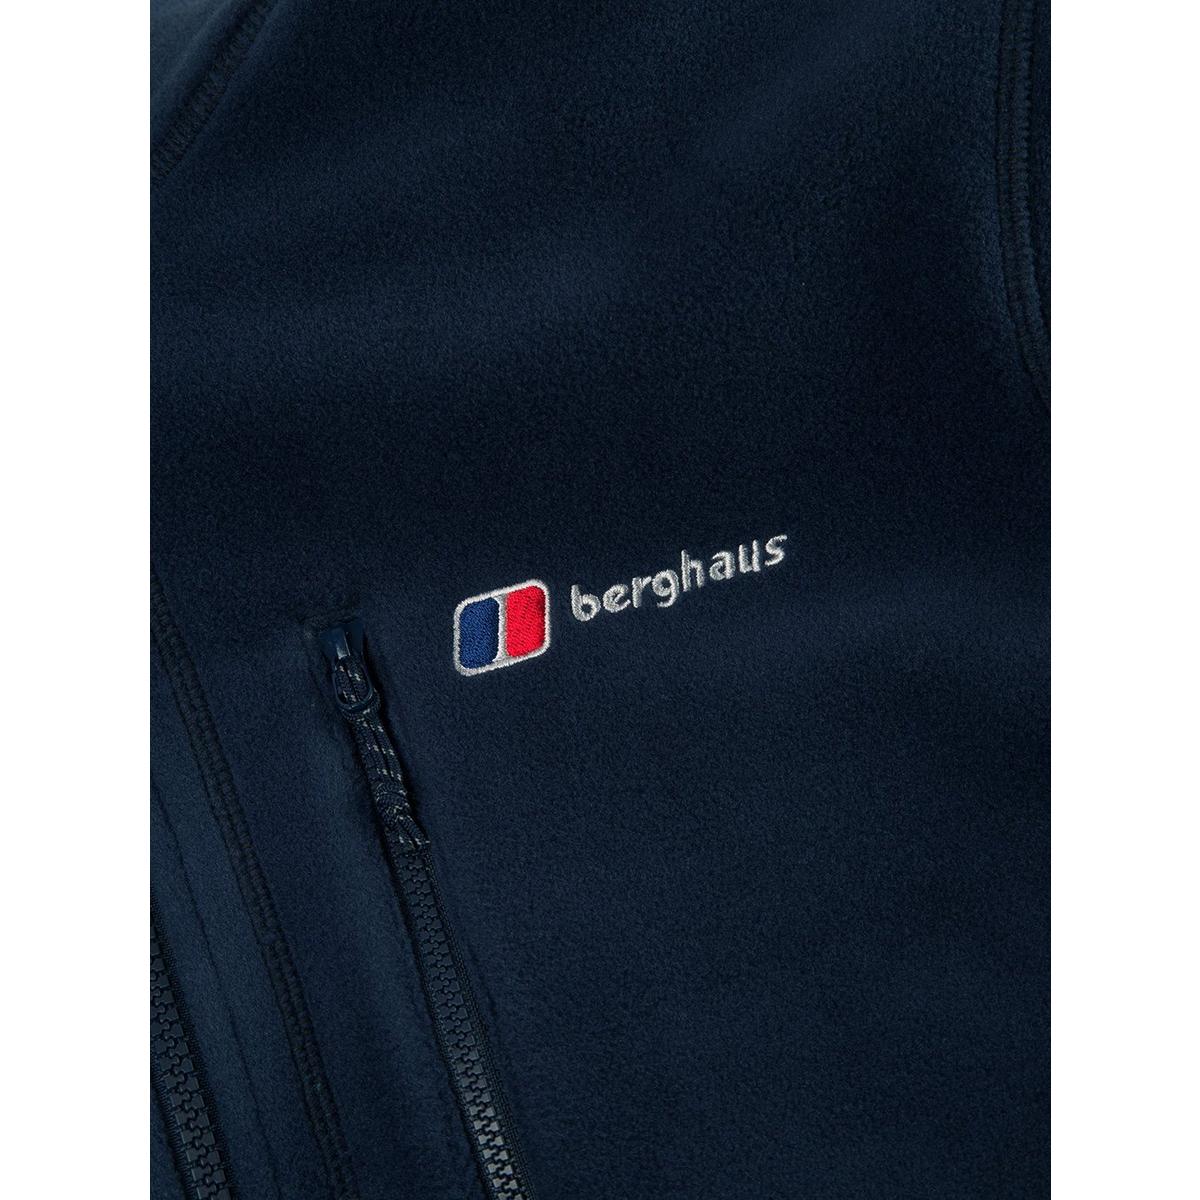 Berghaus Men's Activity Interactive Fleece Jacket - Navy